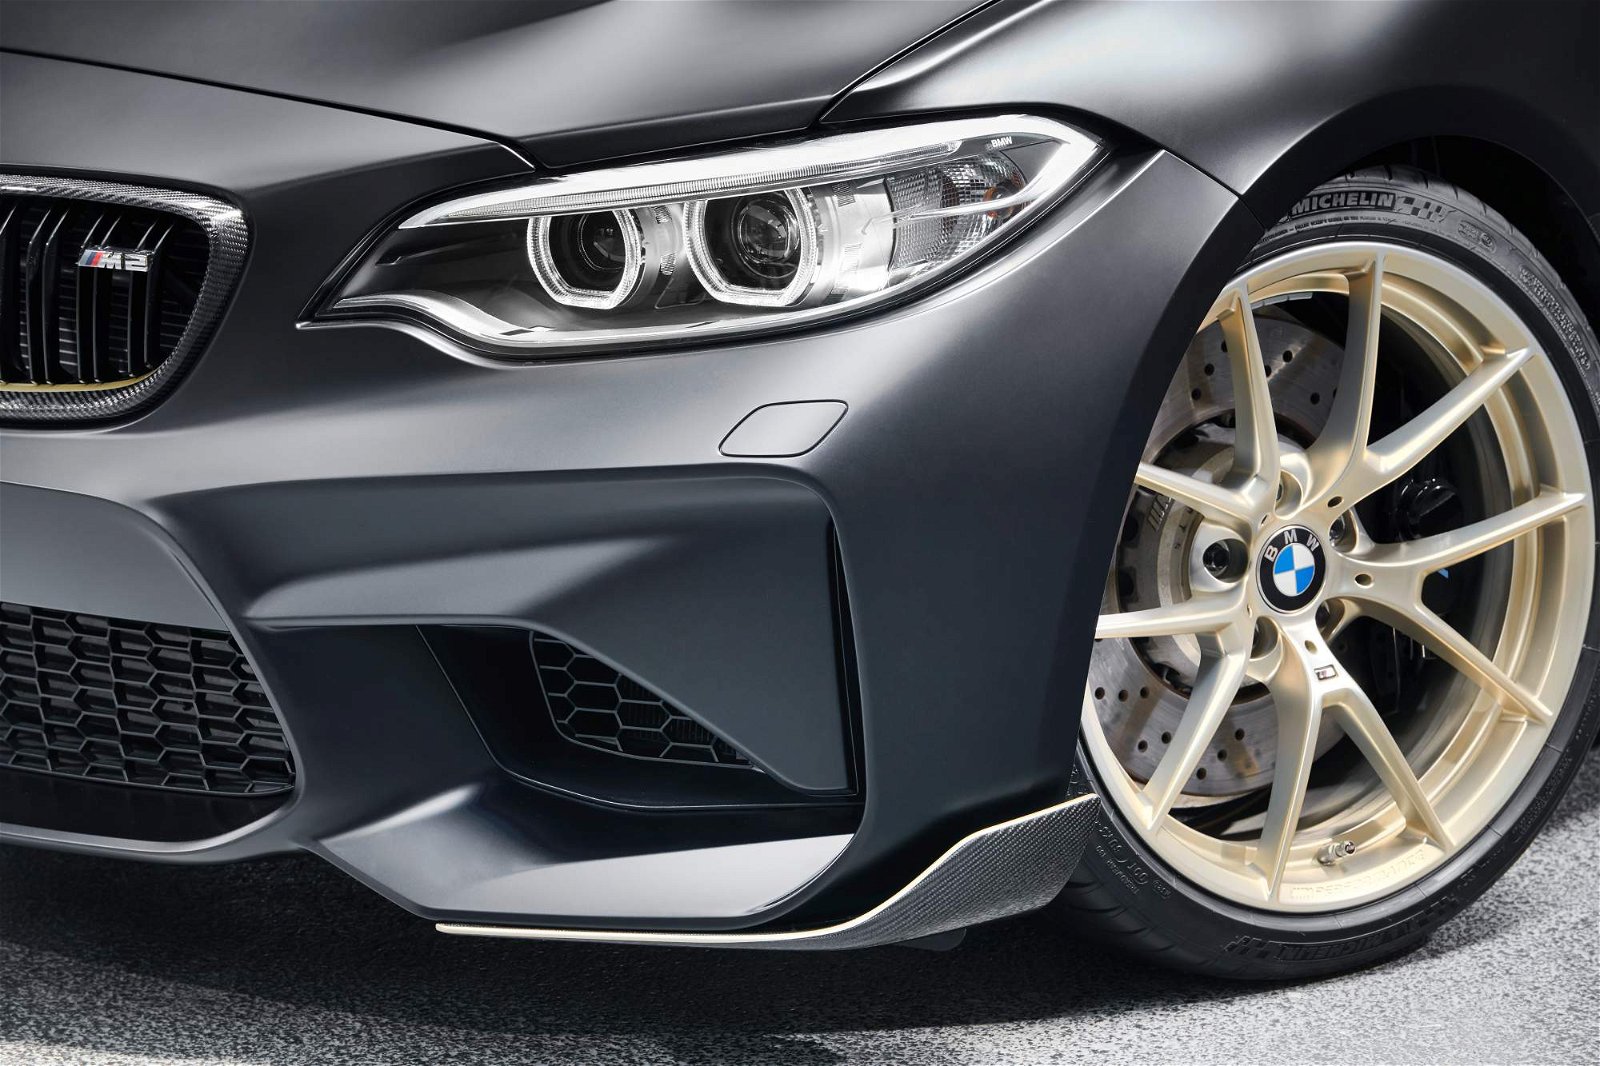 BMW-M-Performance-Parts-Concept-10